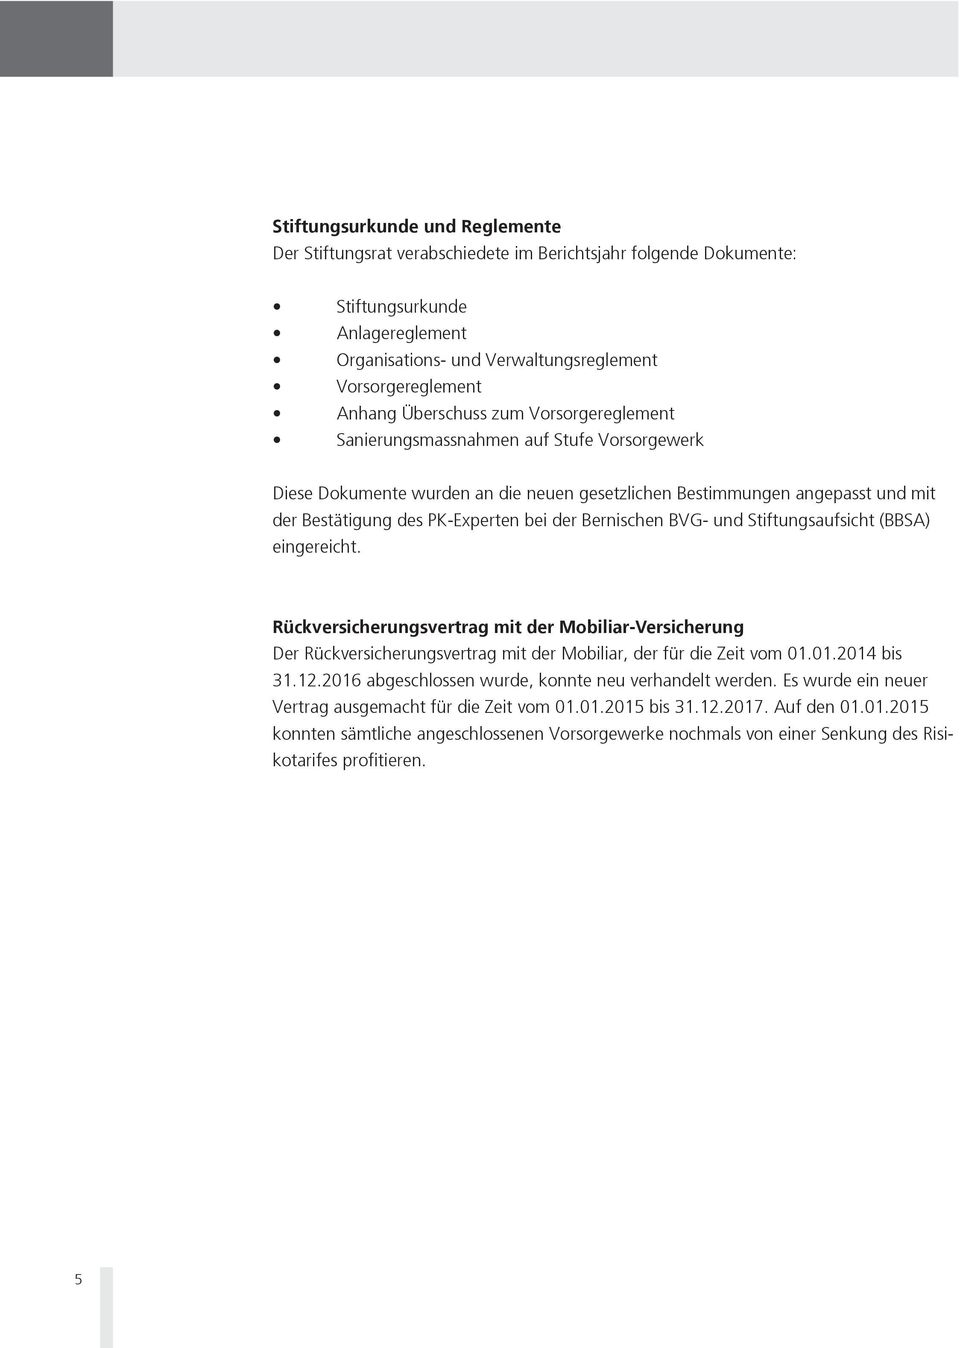 Bernischen BVG- und Stiftungsaufsicht (BBSA) eingereicht. Rückversicherungsvertrag mit der Mobiliar-Versicherung Der Rückversicherungsvertrag mit der Mobiliar, der für die Zeit vom 01.01.2014 bis 31.